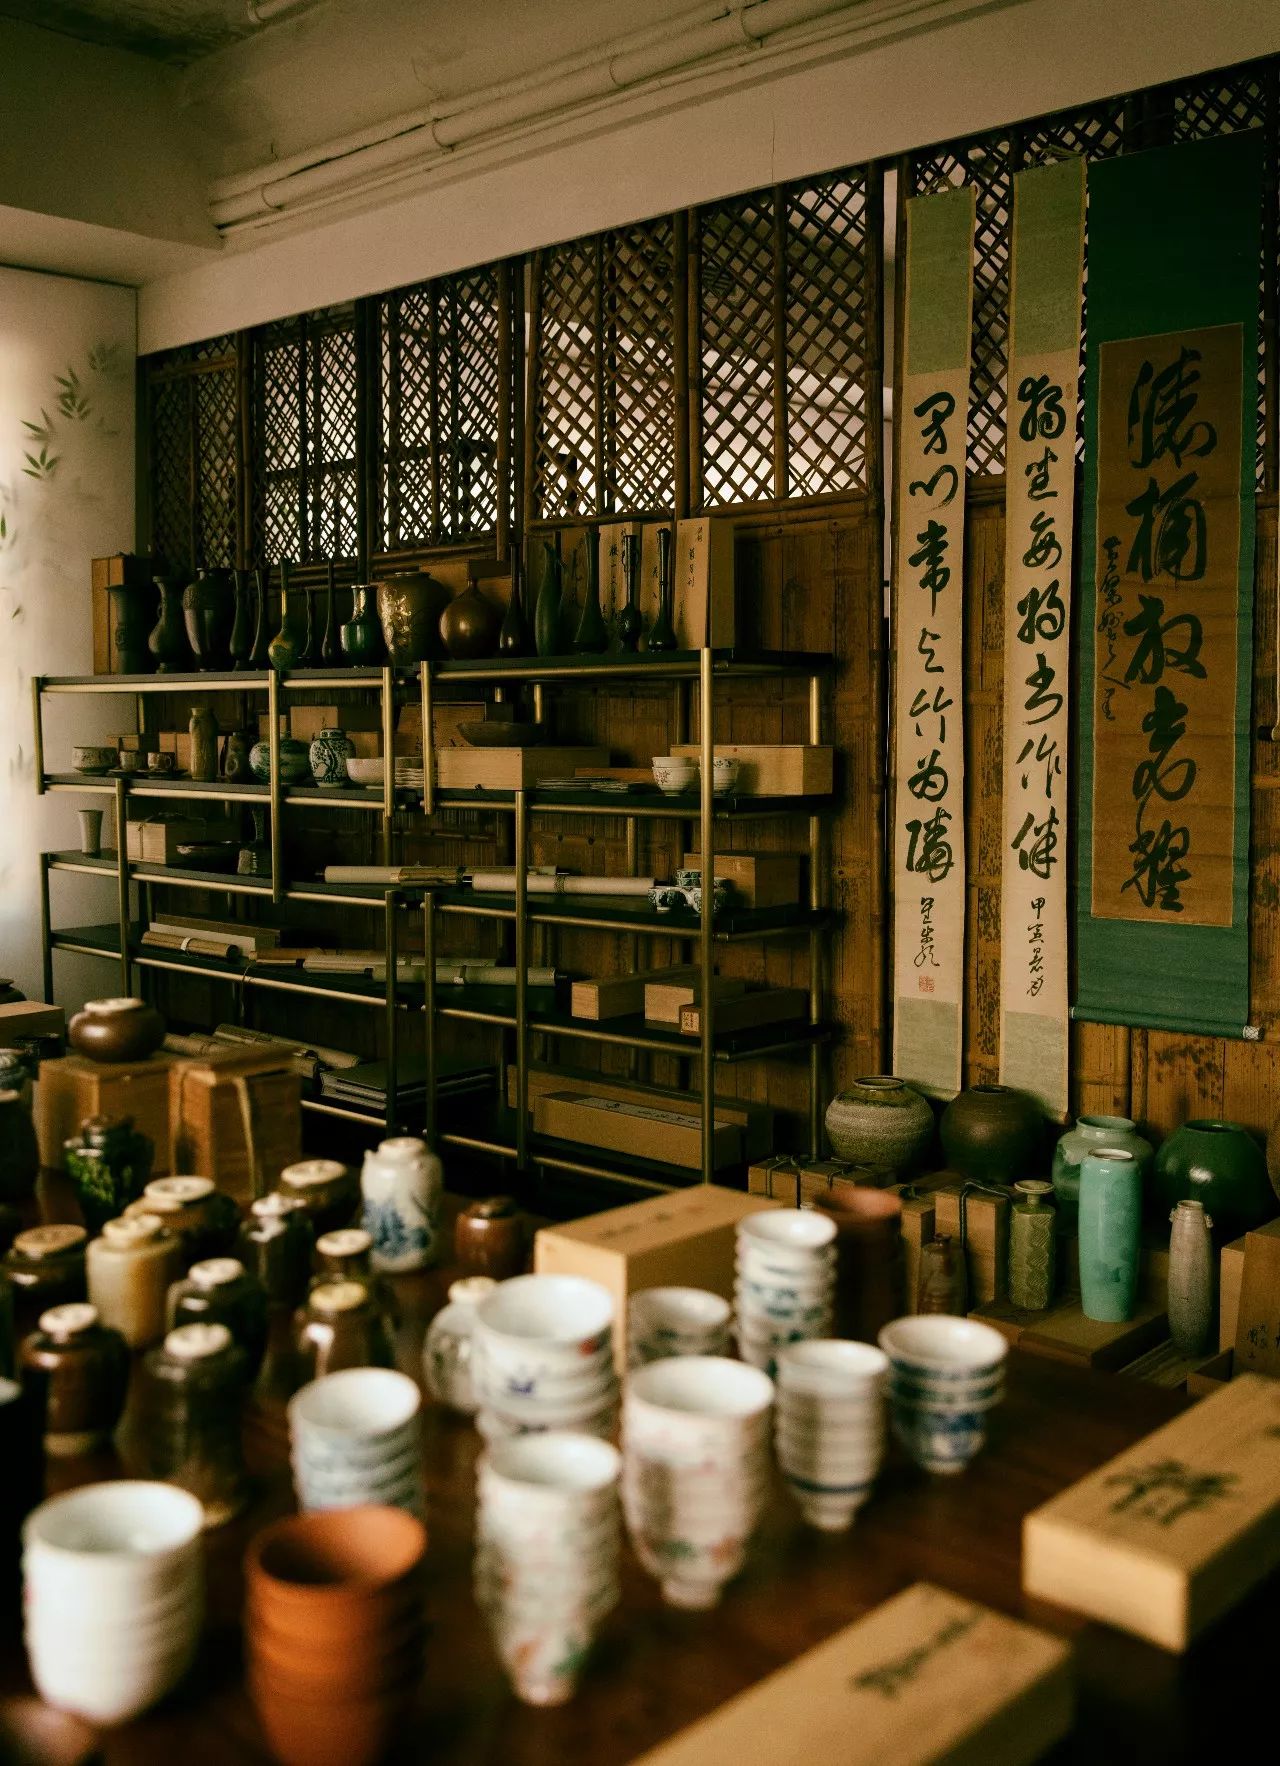 来玩吧丨日本古董茶器具快闪市集- 雪花新闻